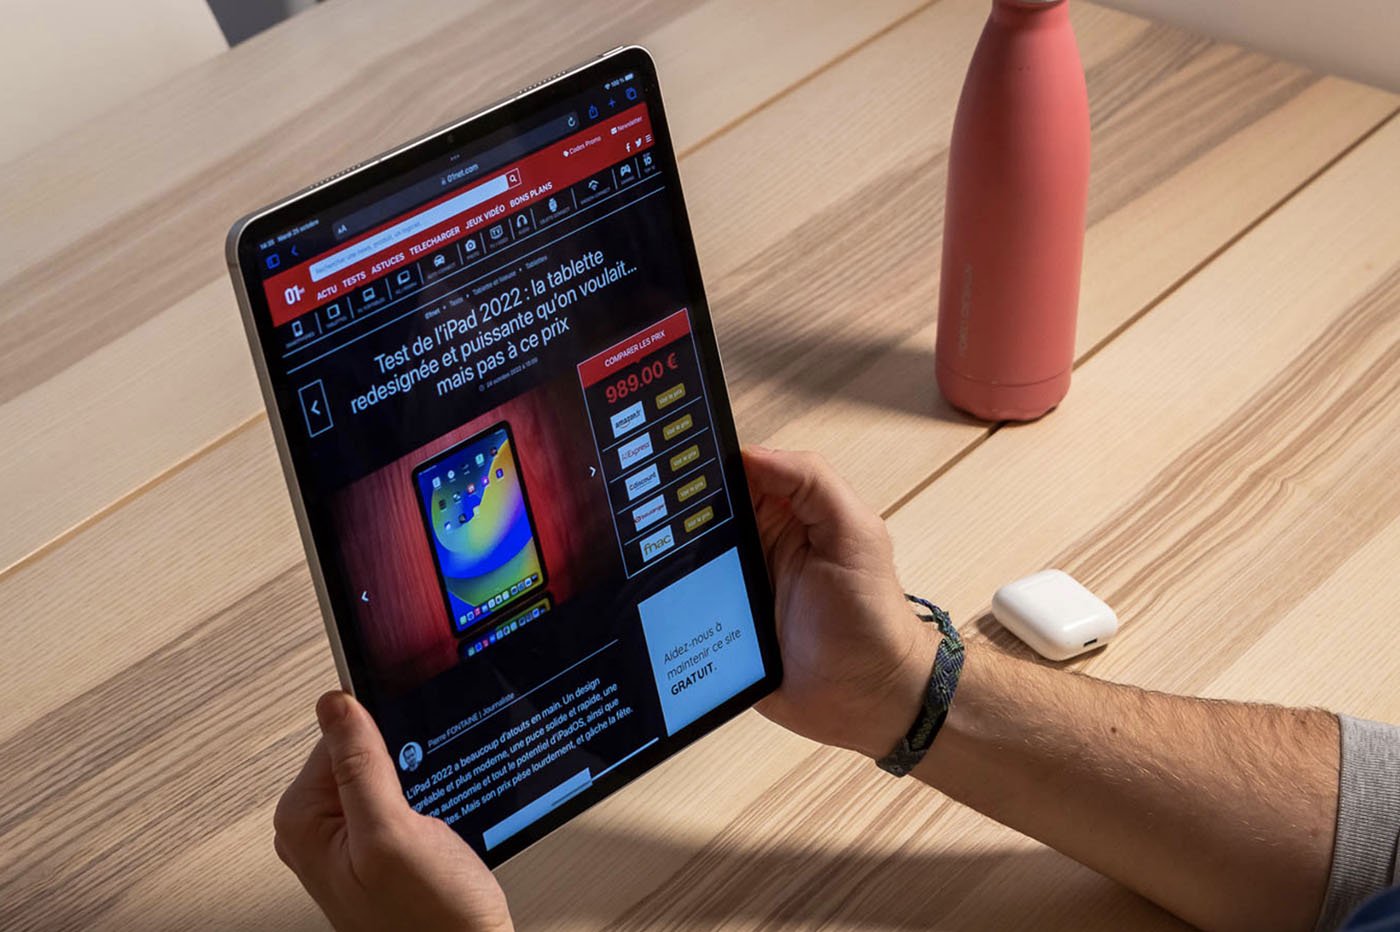 Apple iPad Pro (2020) : prix, fiche technique, actualités et test